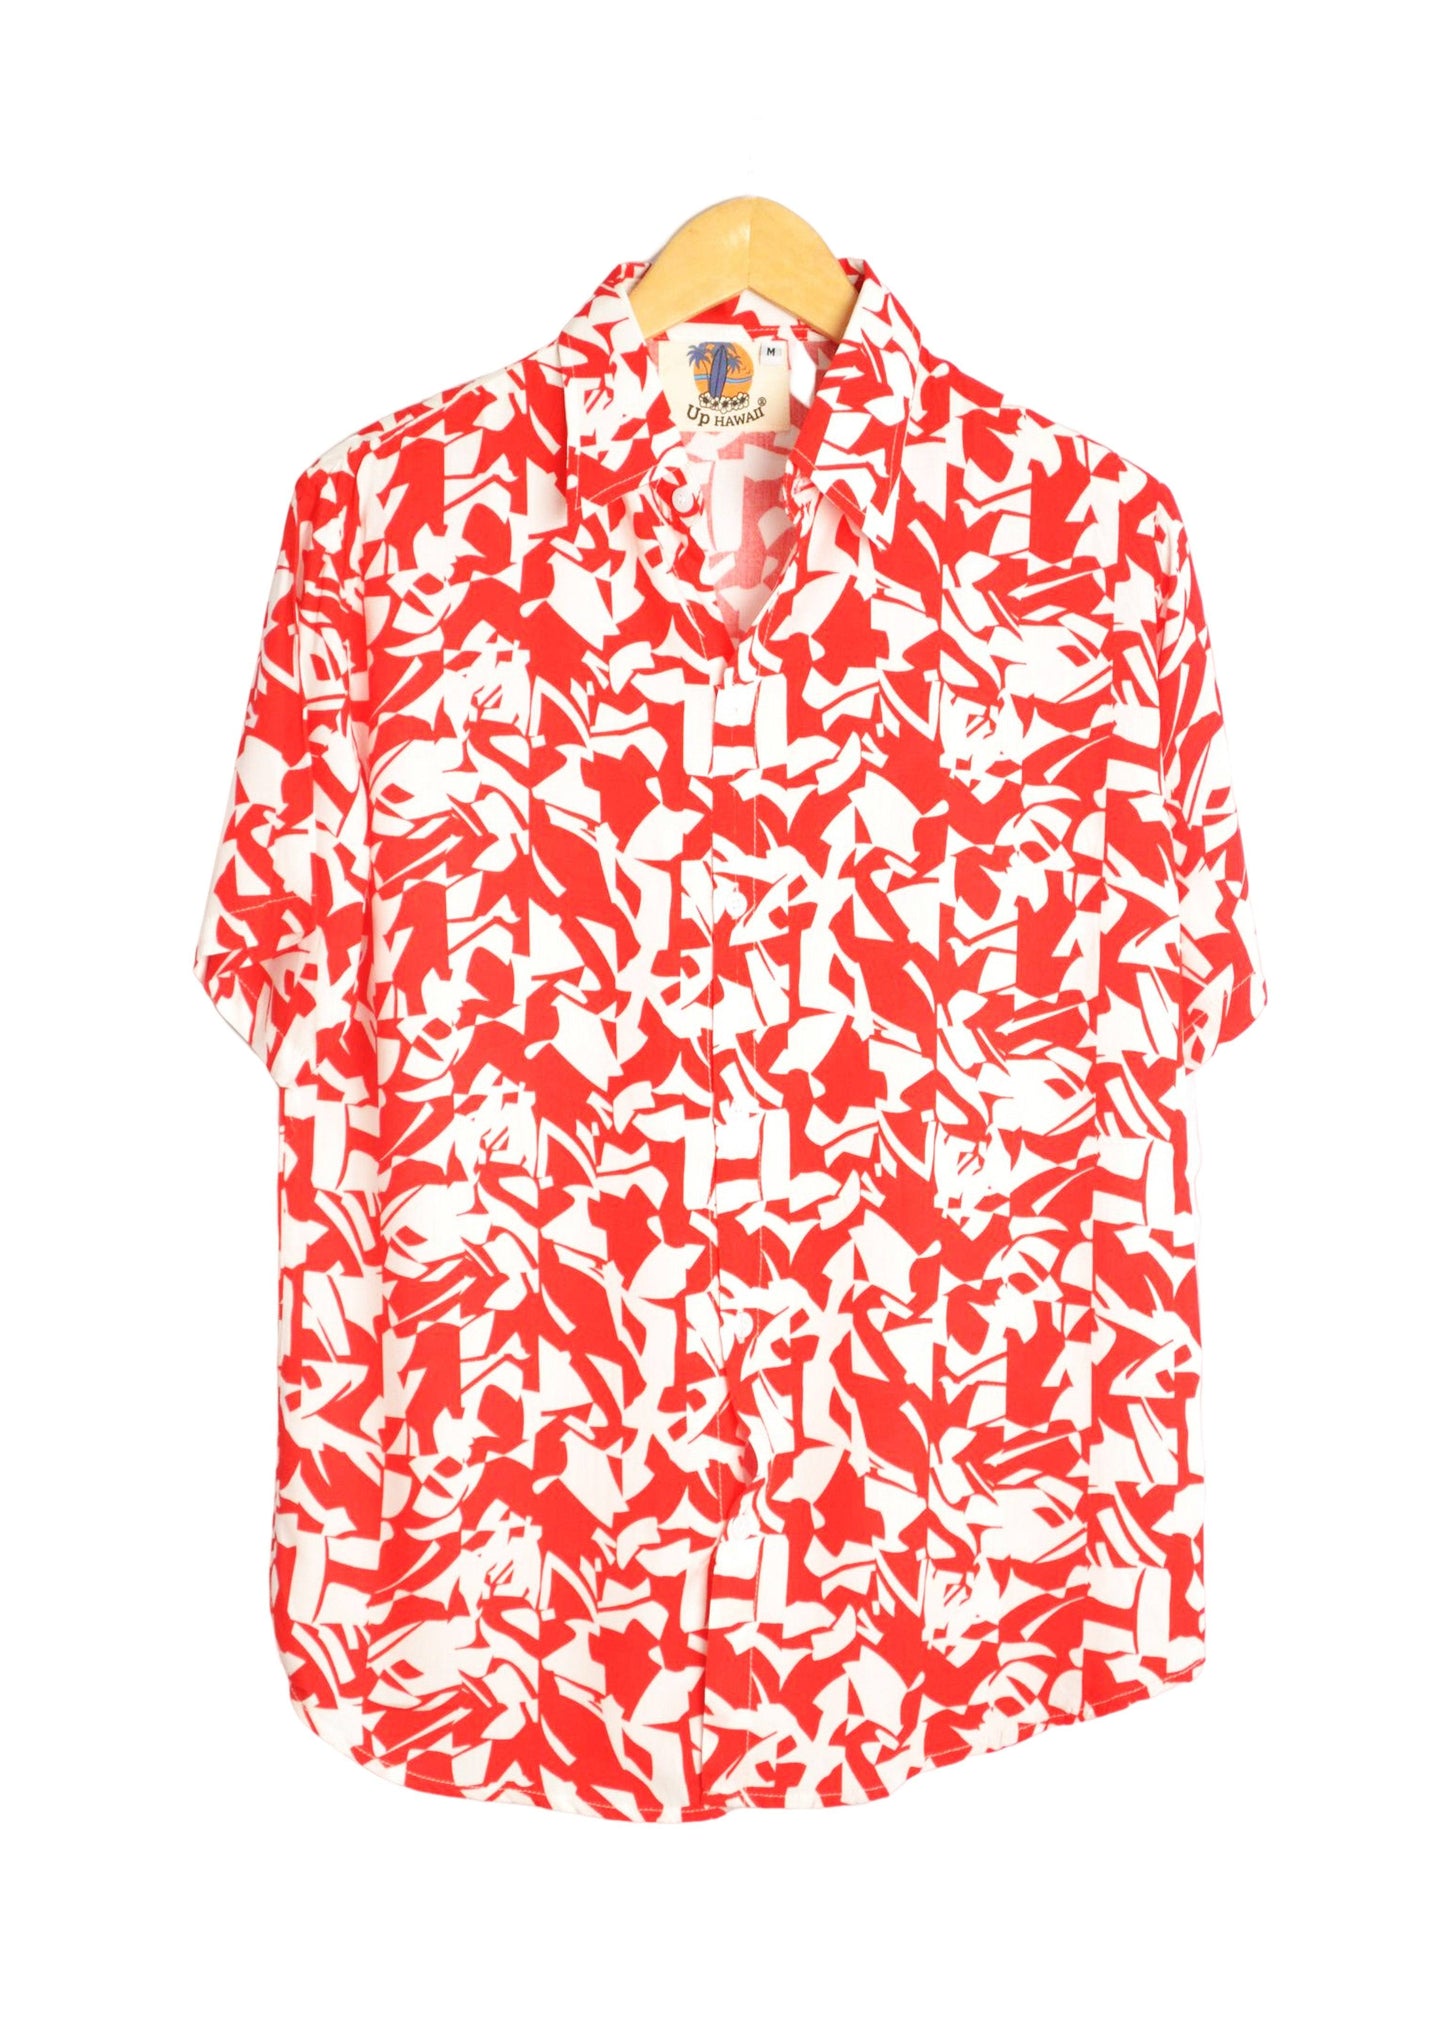 Chemise homme à motifs géométriques couleur rouge et blanc - GL BOUTIK